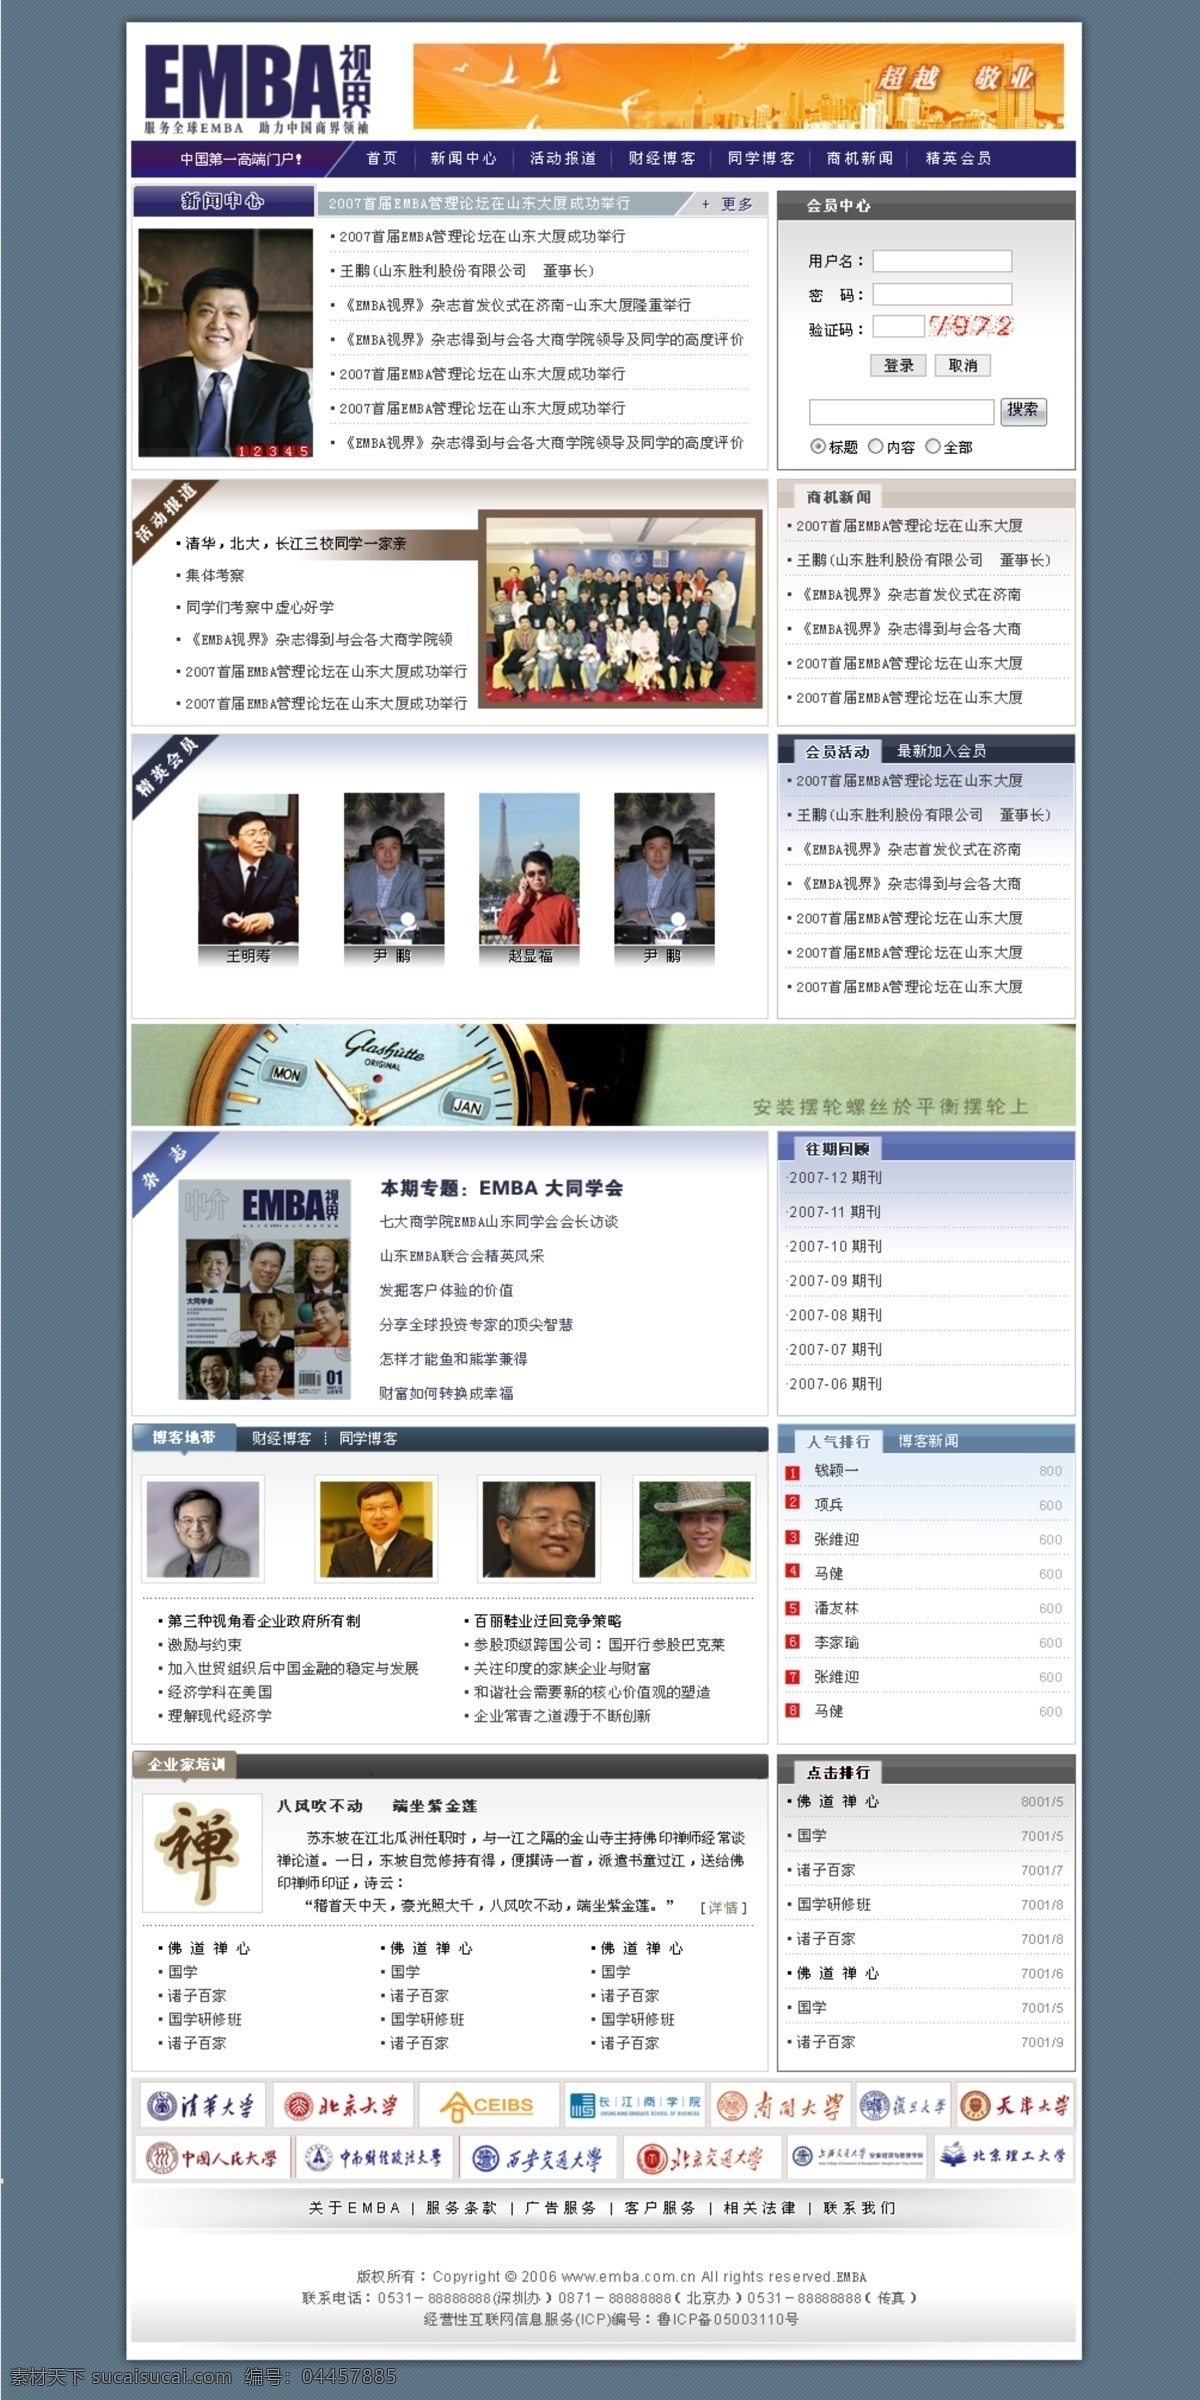 教育 网页 效果图 网页模板 源文件库 杂志 中文模版 网页素材